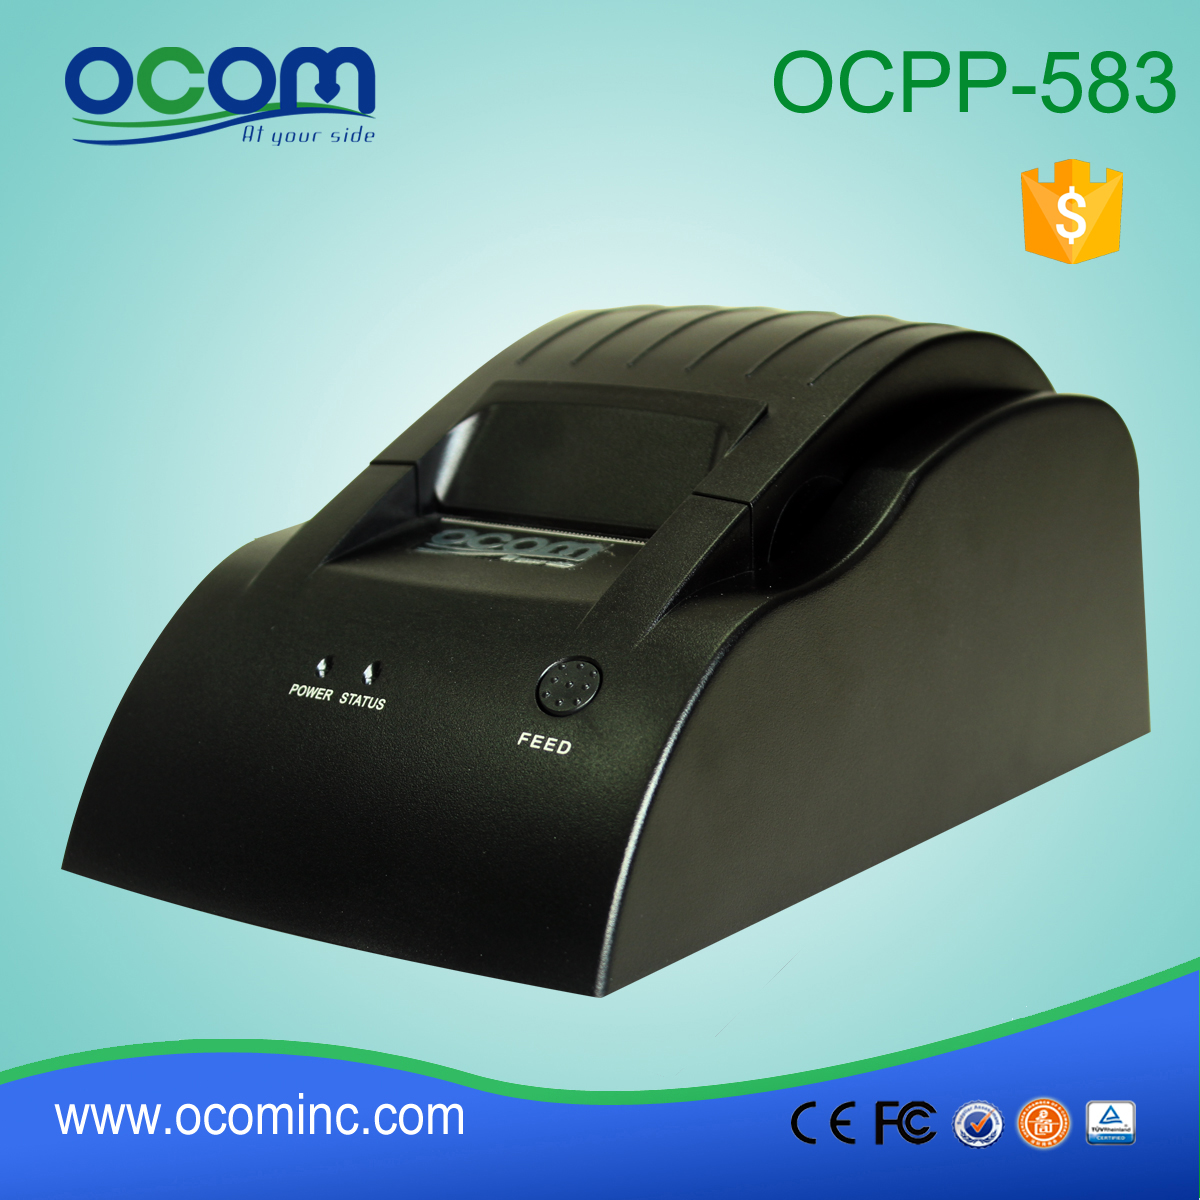 OCPP-583-P 58mm Port thermique de l'imprimante ticket de réception 36p POS